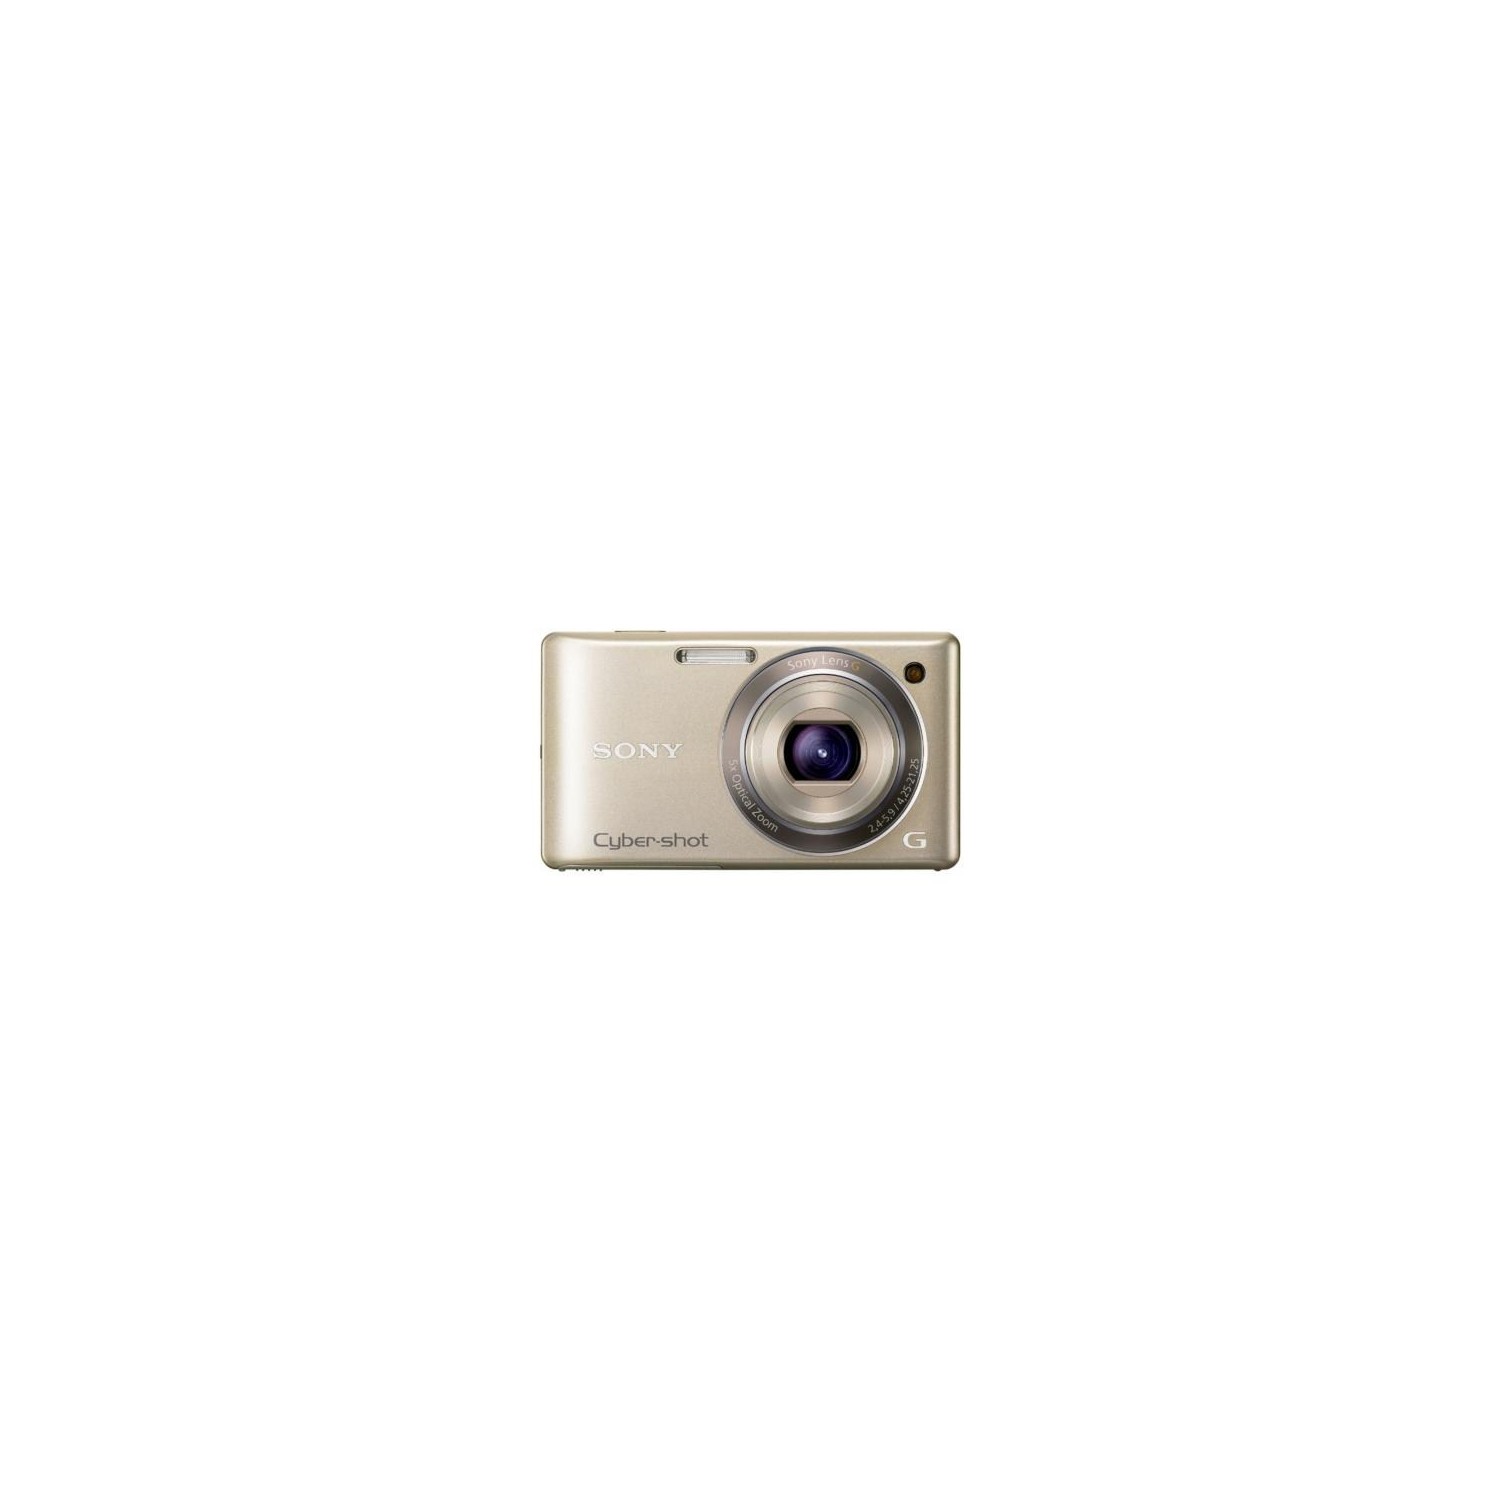 予約 ソニー SONY デジタルカメラ Cybershot W350 ブラック DSC-W350 B wyw801m